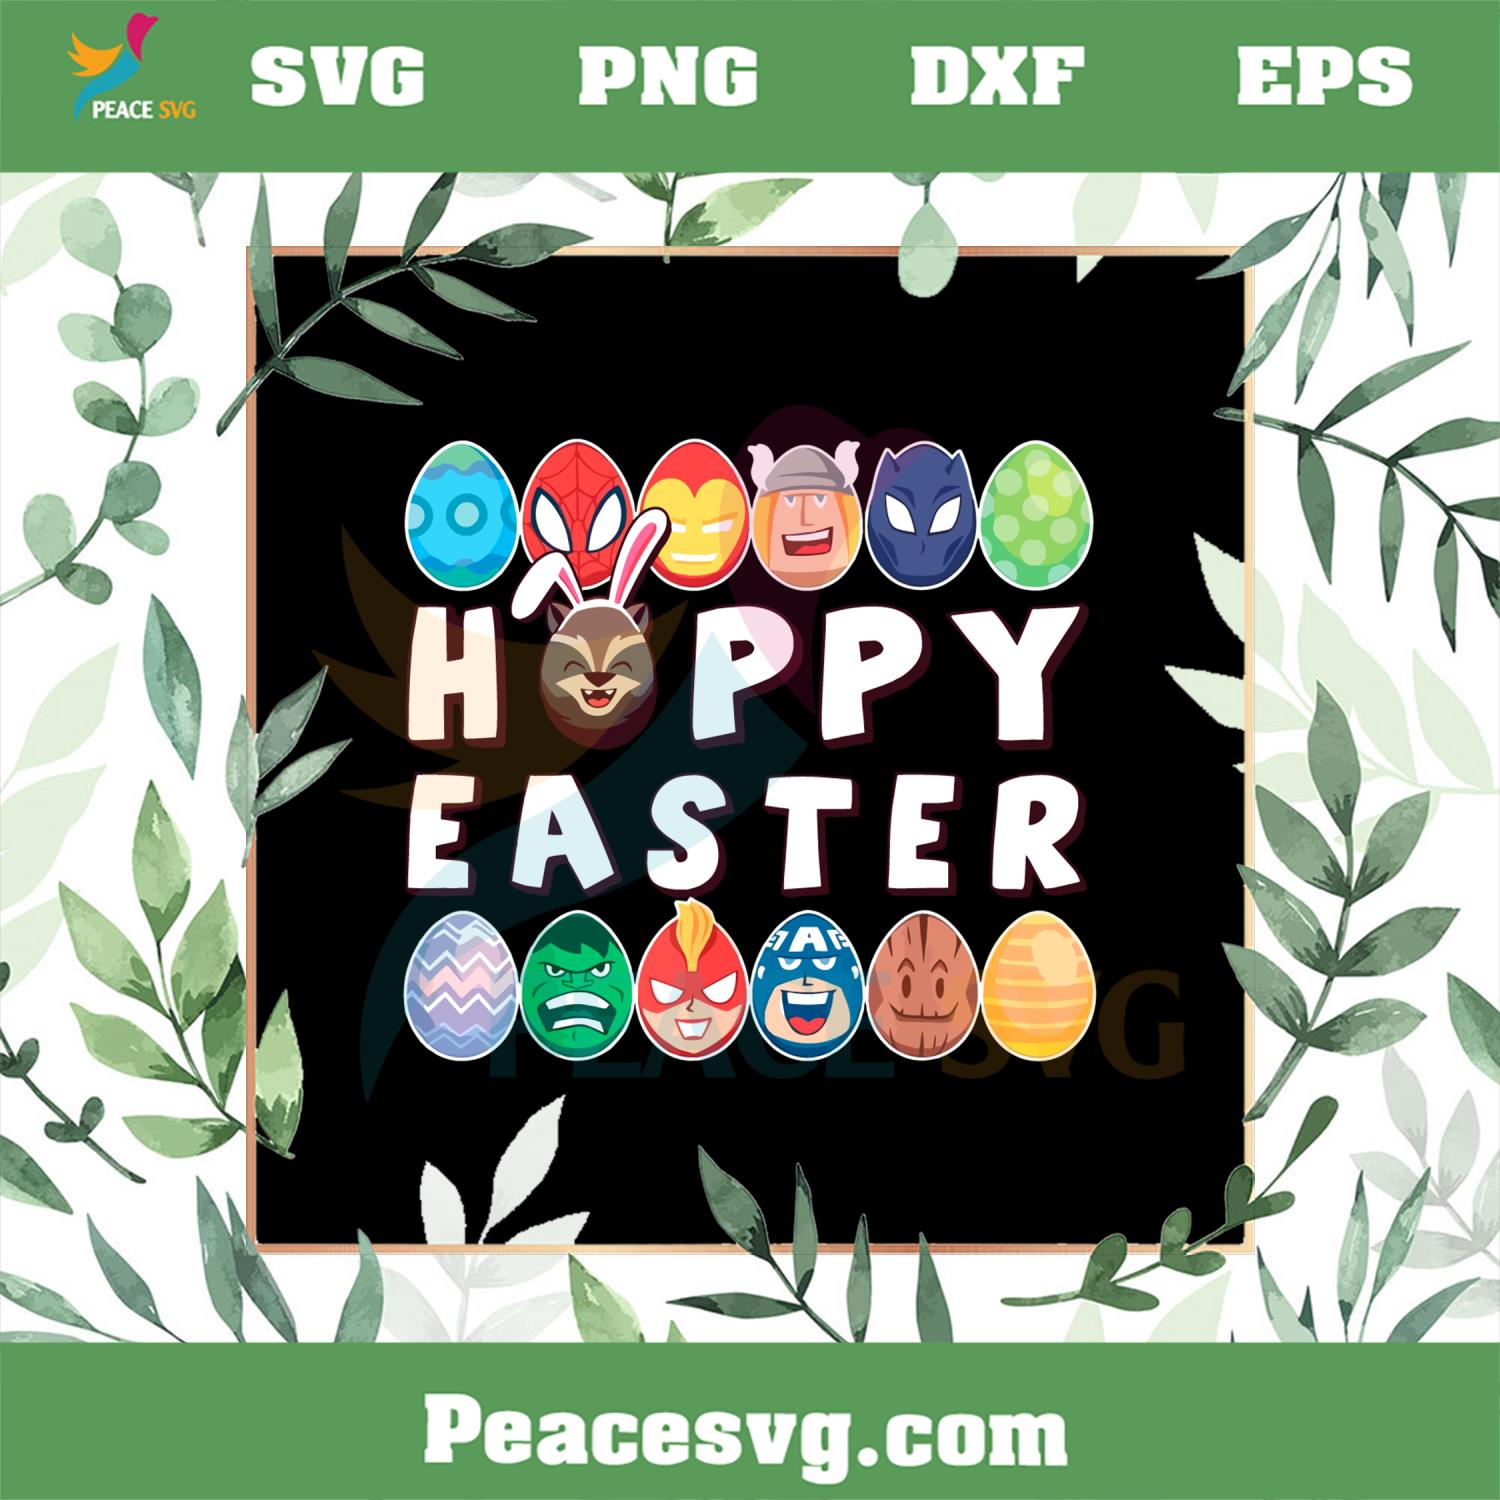 Marvel Easter Hoppy Easter Egg Super Hero SVG Cutting Files